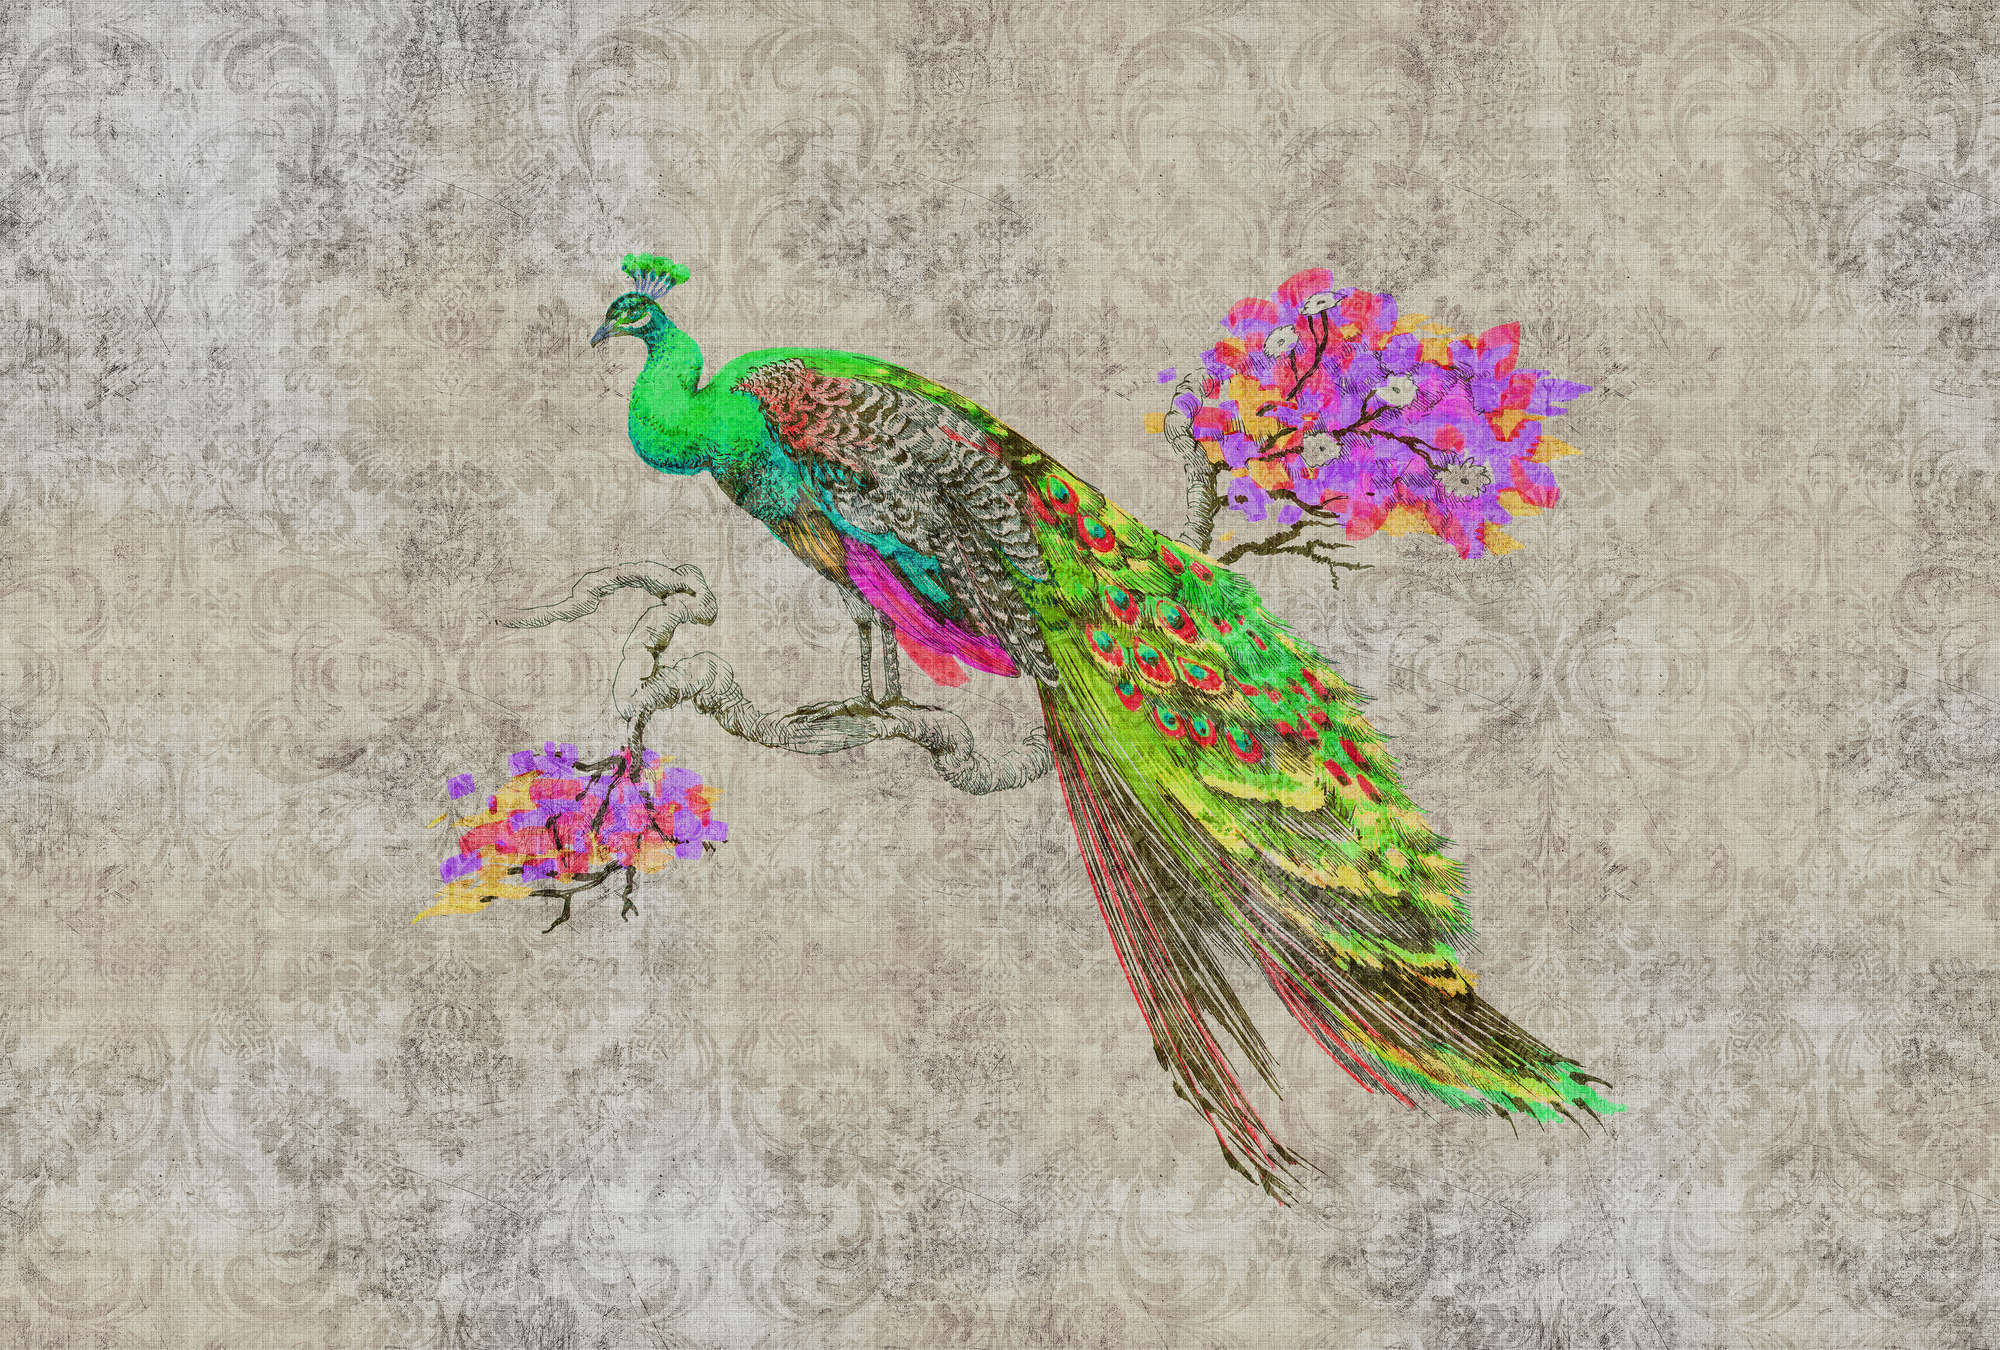             Peacock 1 - Natuurlijk linnen structuurbehang met pauwen in neonkleuren - Groen, Roze | Premium glad vlies
        